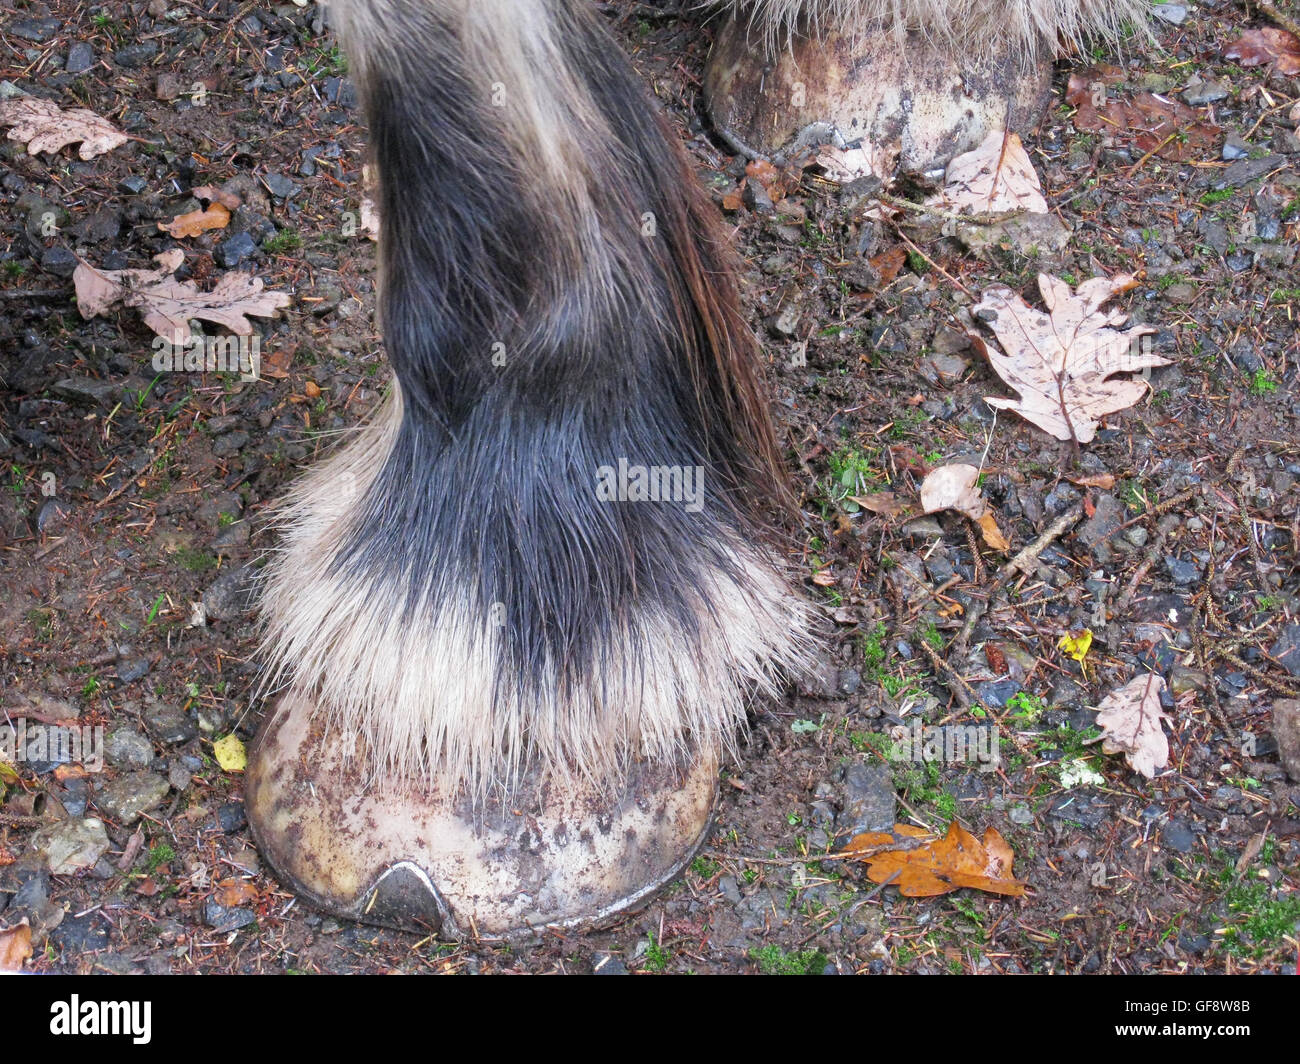 La parte inferiore della gamba dettaglio da un gruppo di lavoro del shire cavallo Foto Stock